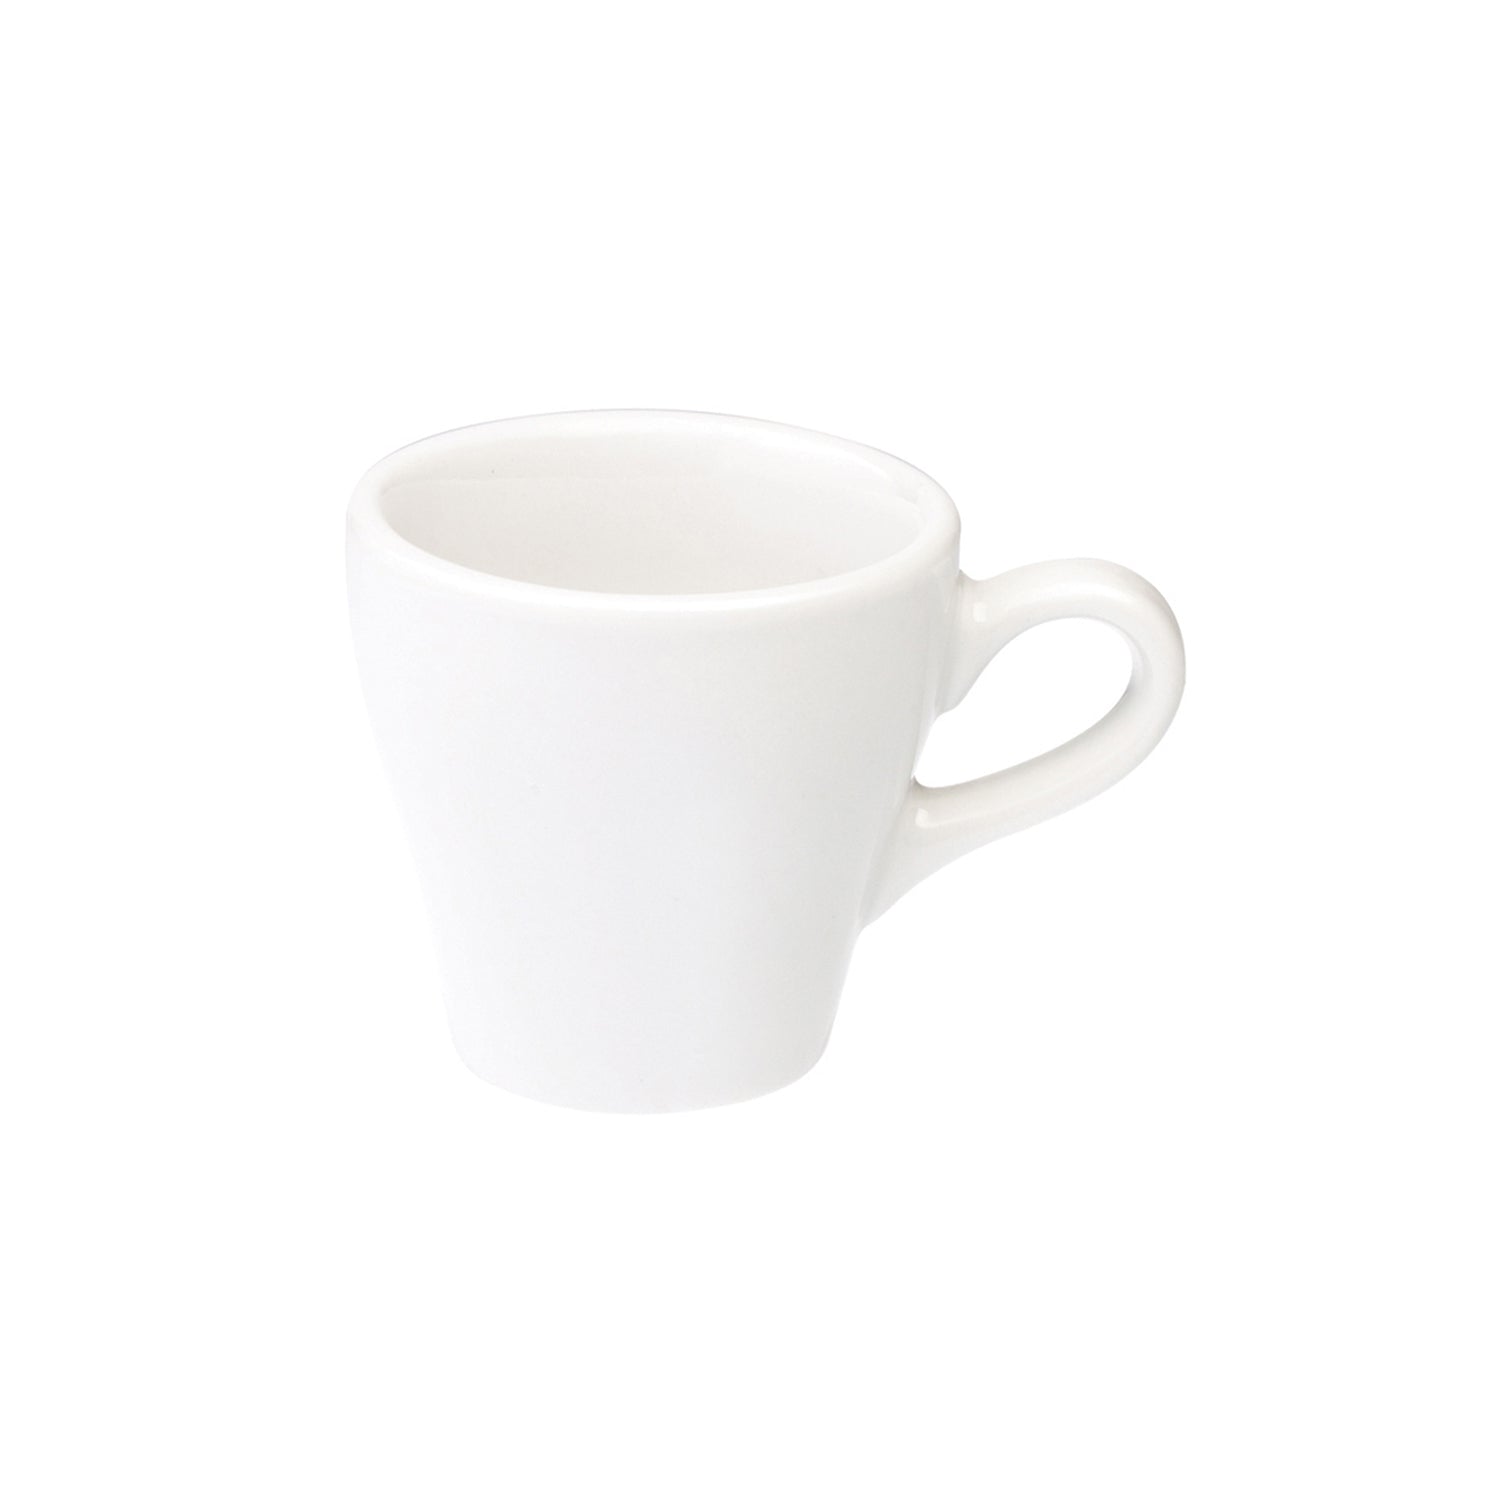 Loveramics Tulip Espresso Cup (White) 80ml